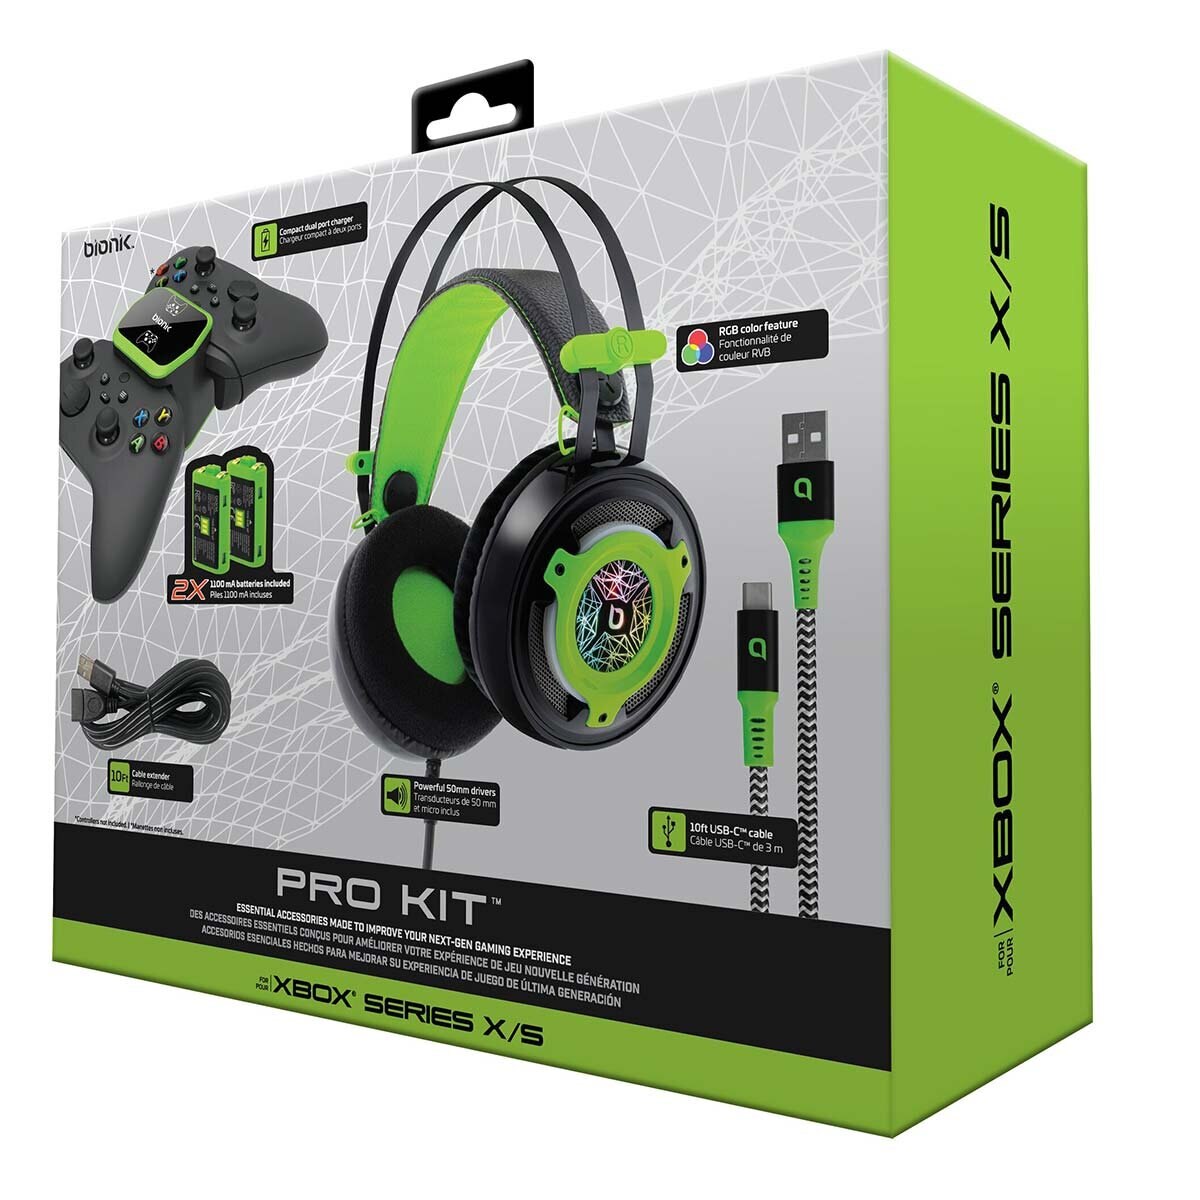 Bionik Pro Kit Bundle para Gaming de Xbox Series X/S Gaming